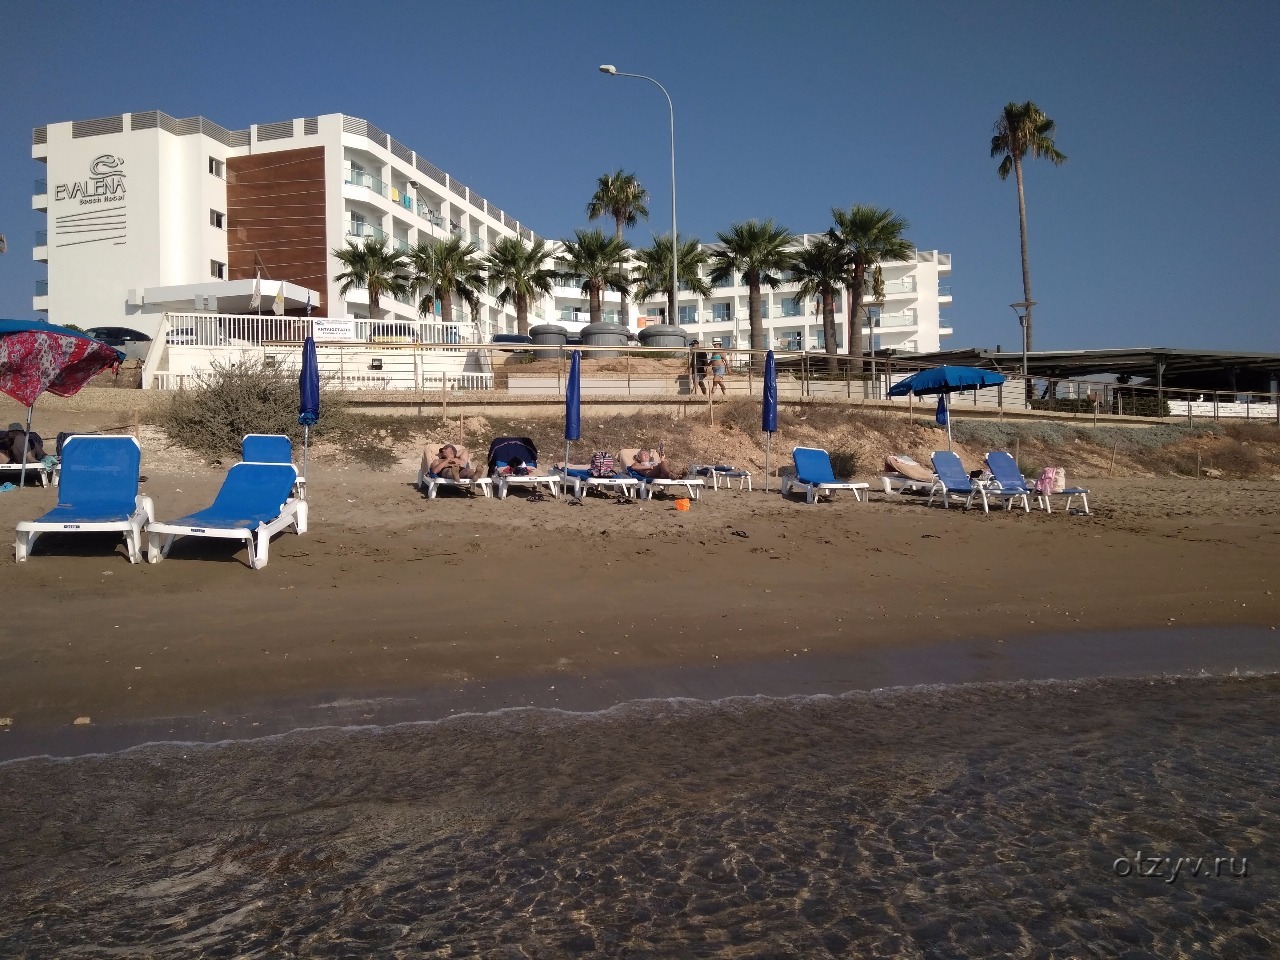 Evalena Beach Hotel